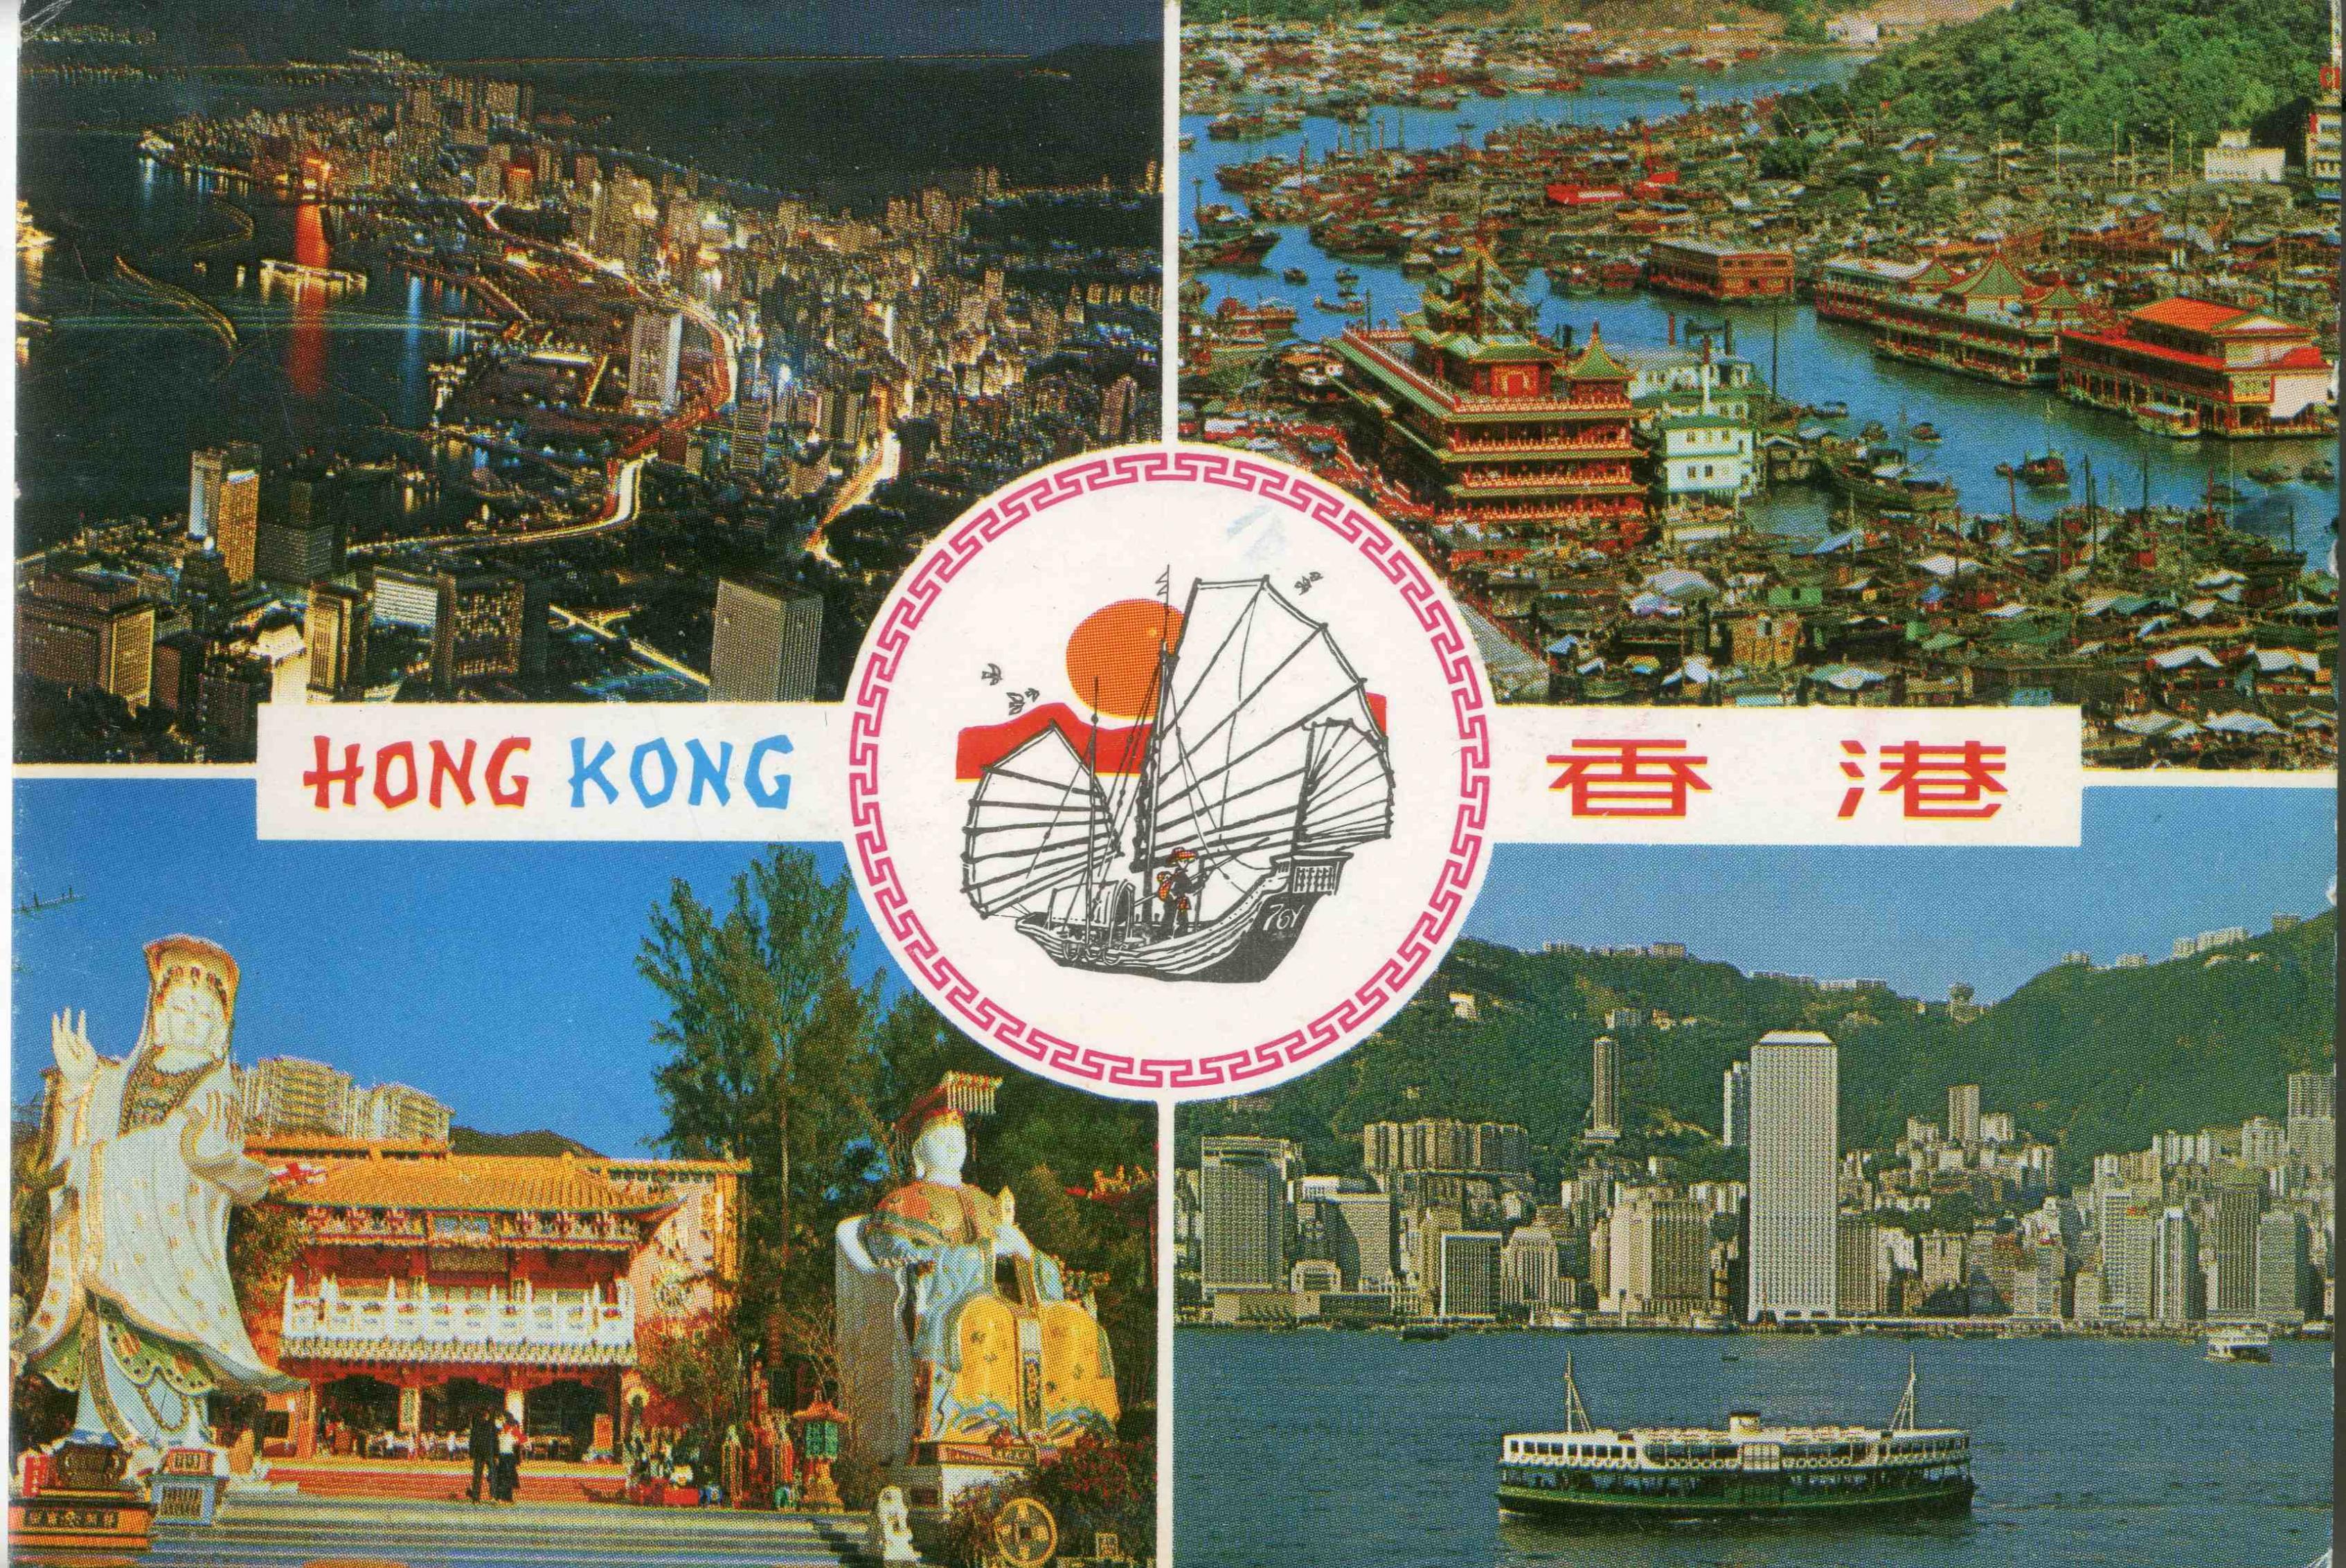 一張舊明信片，反映昔日香港城市風景線的四個重點︰維港兩岸、華人風俗、東方之珠、珍寶海鮮舫（相片由作者提供）